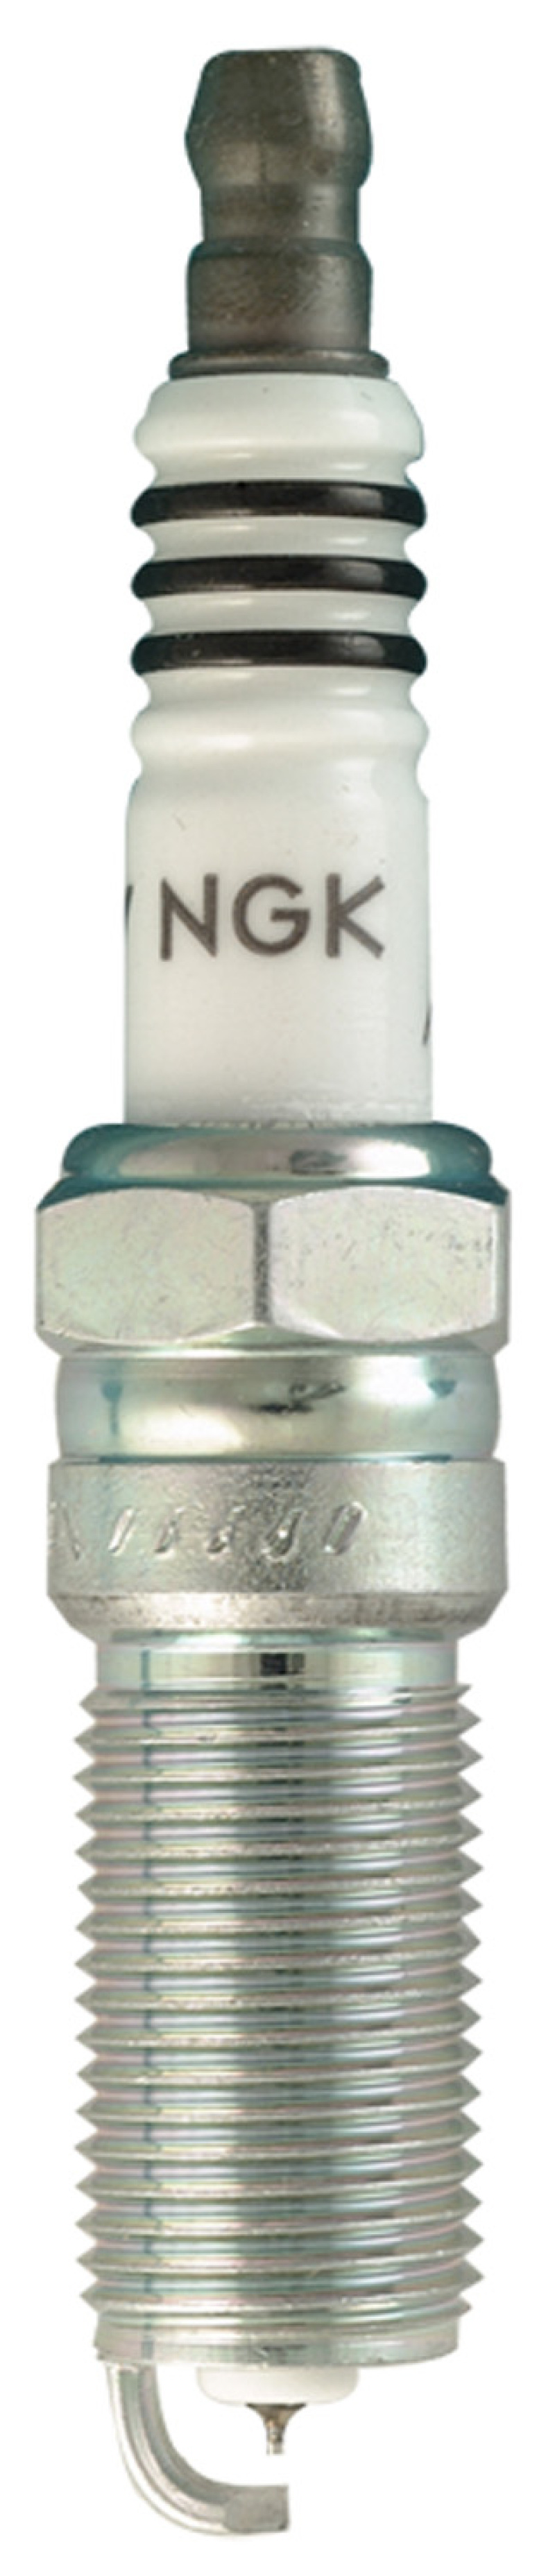 NGK Single Iridium Spark Plug Box of 4 (LTR5IX-11) - 4344